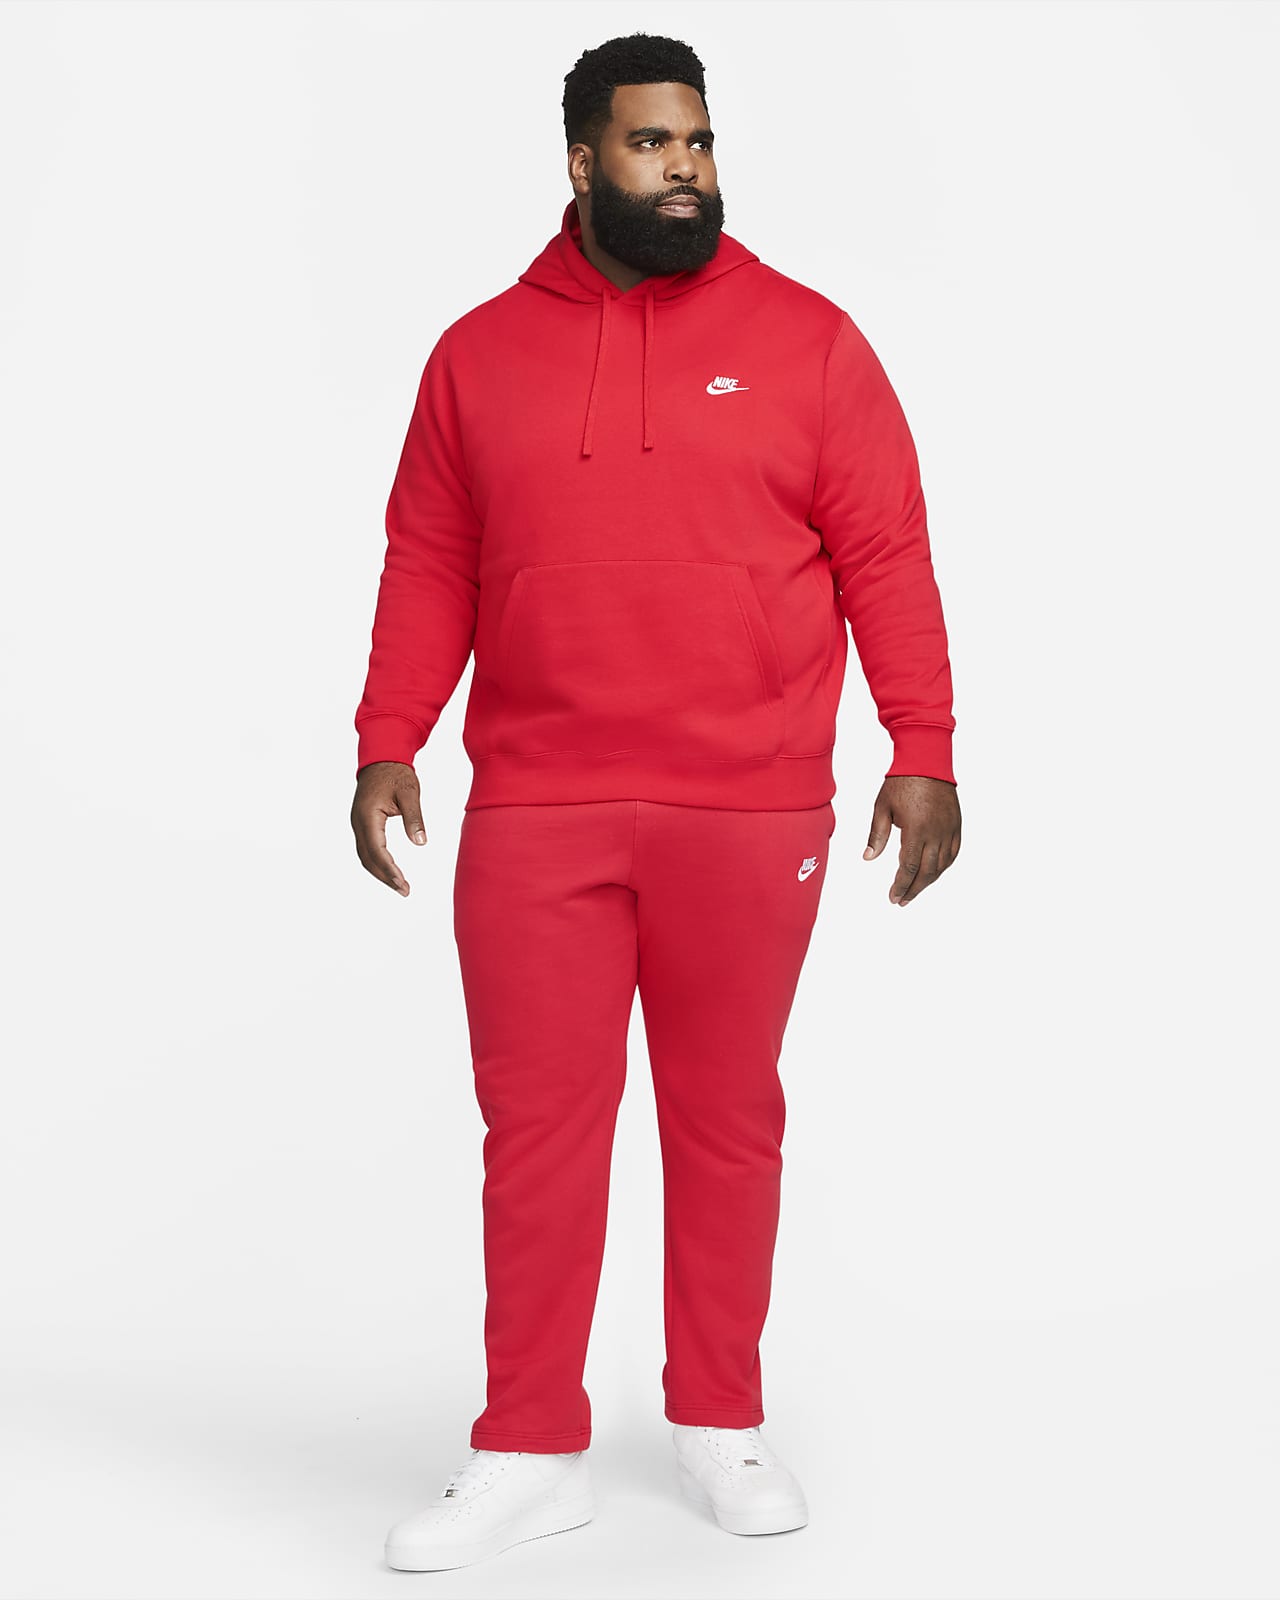 Nike Men's Sportswear Club Fleece Monogram Jogger Pants in Grey - ShopStyle